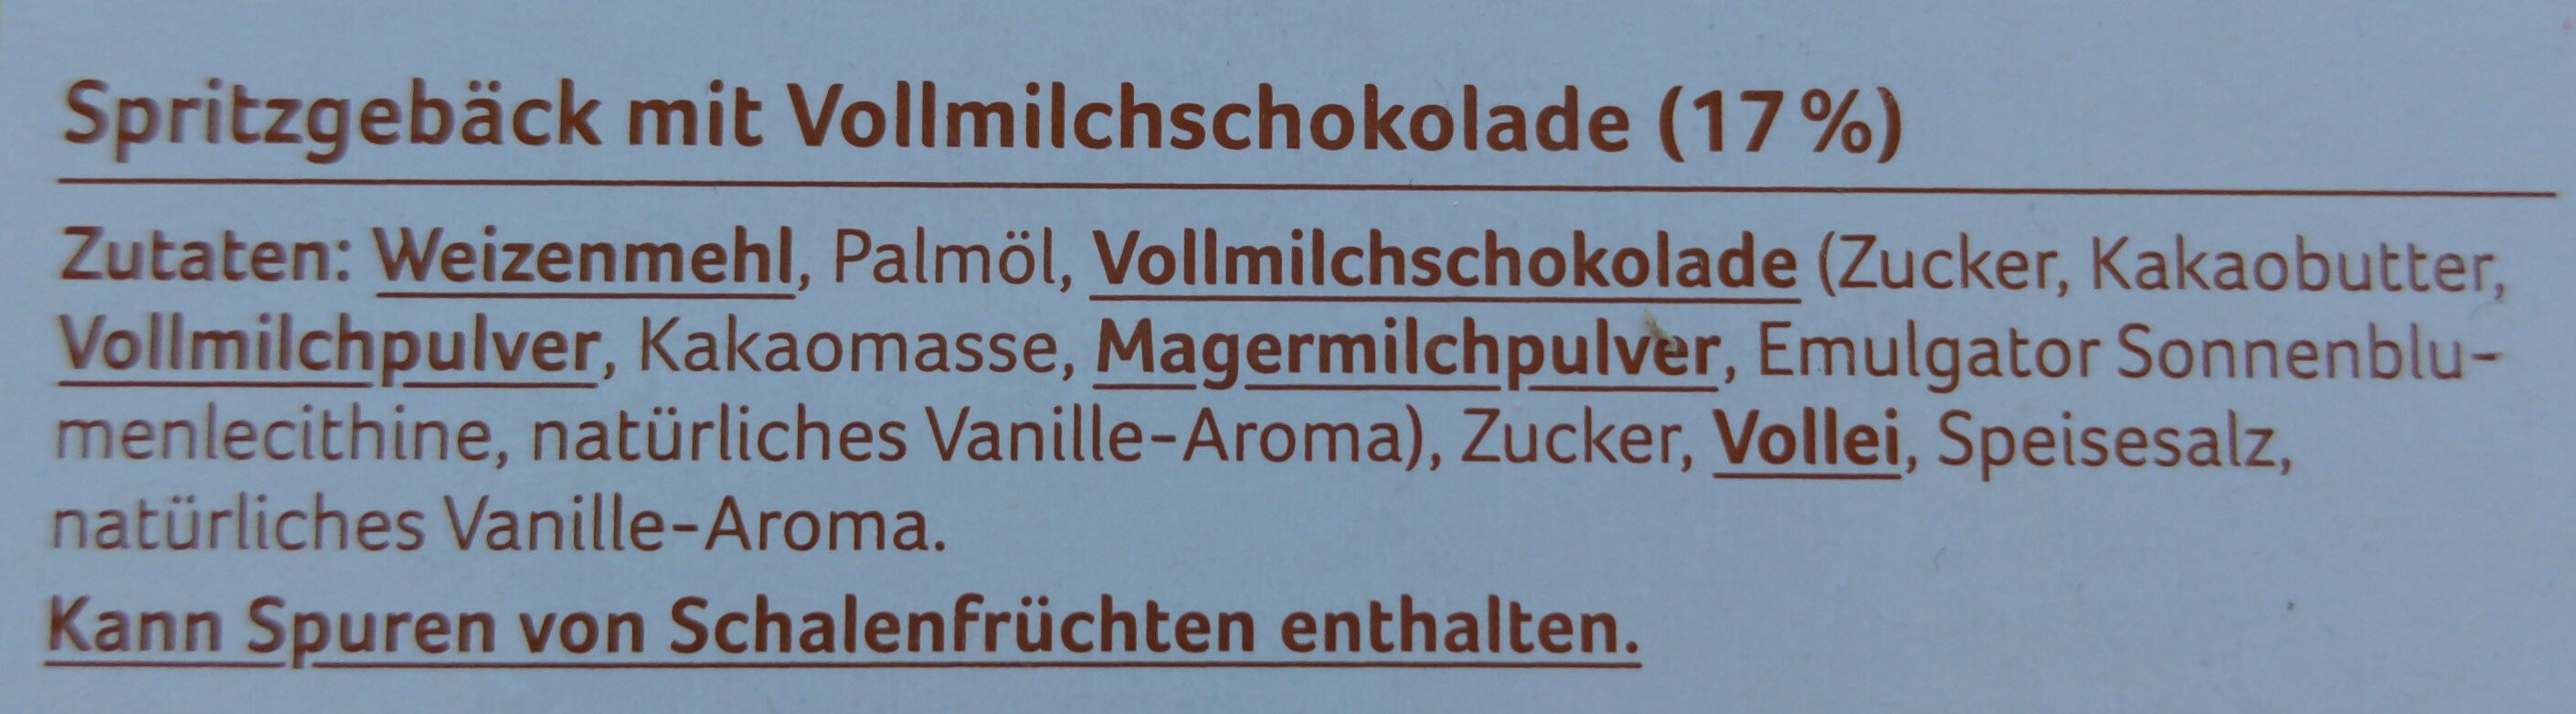 Schoko Spritzgebäck, 17 % Vollmilchschokolade - Ingredients - de